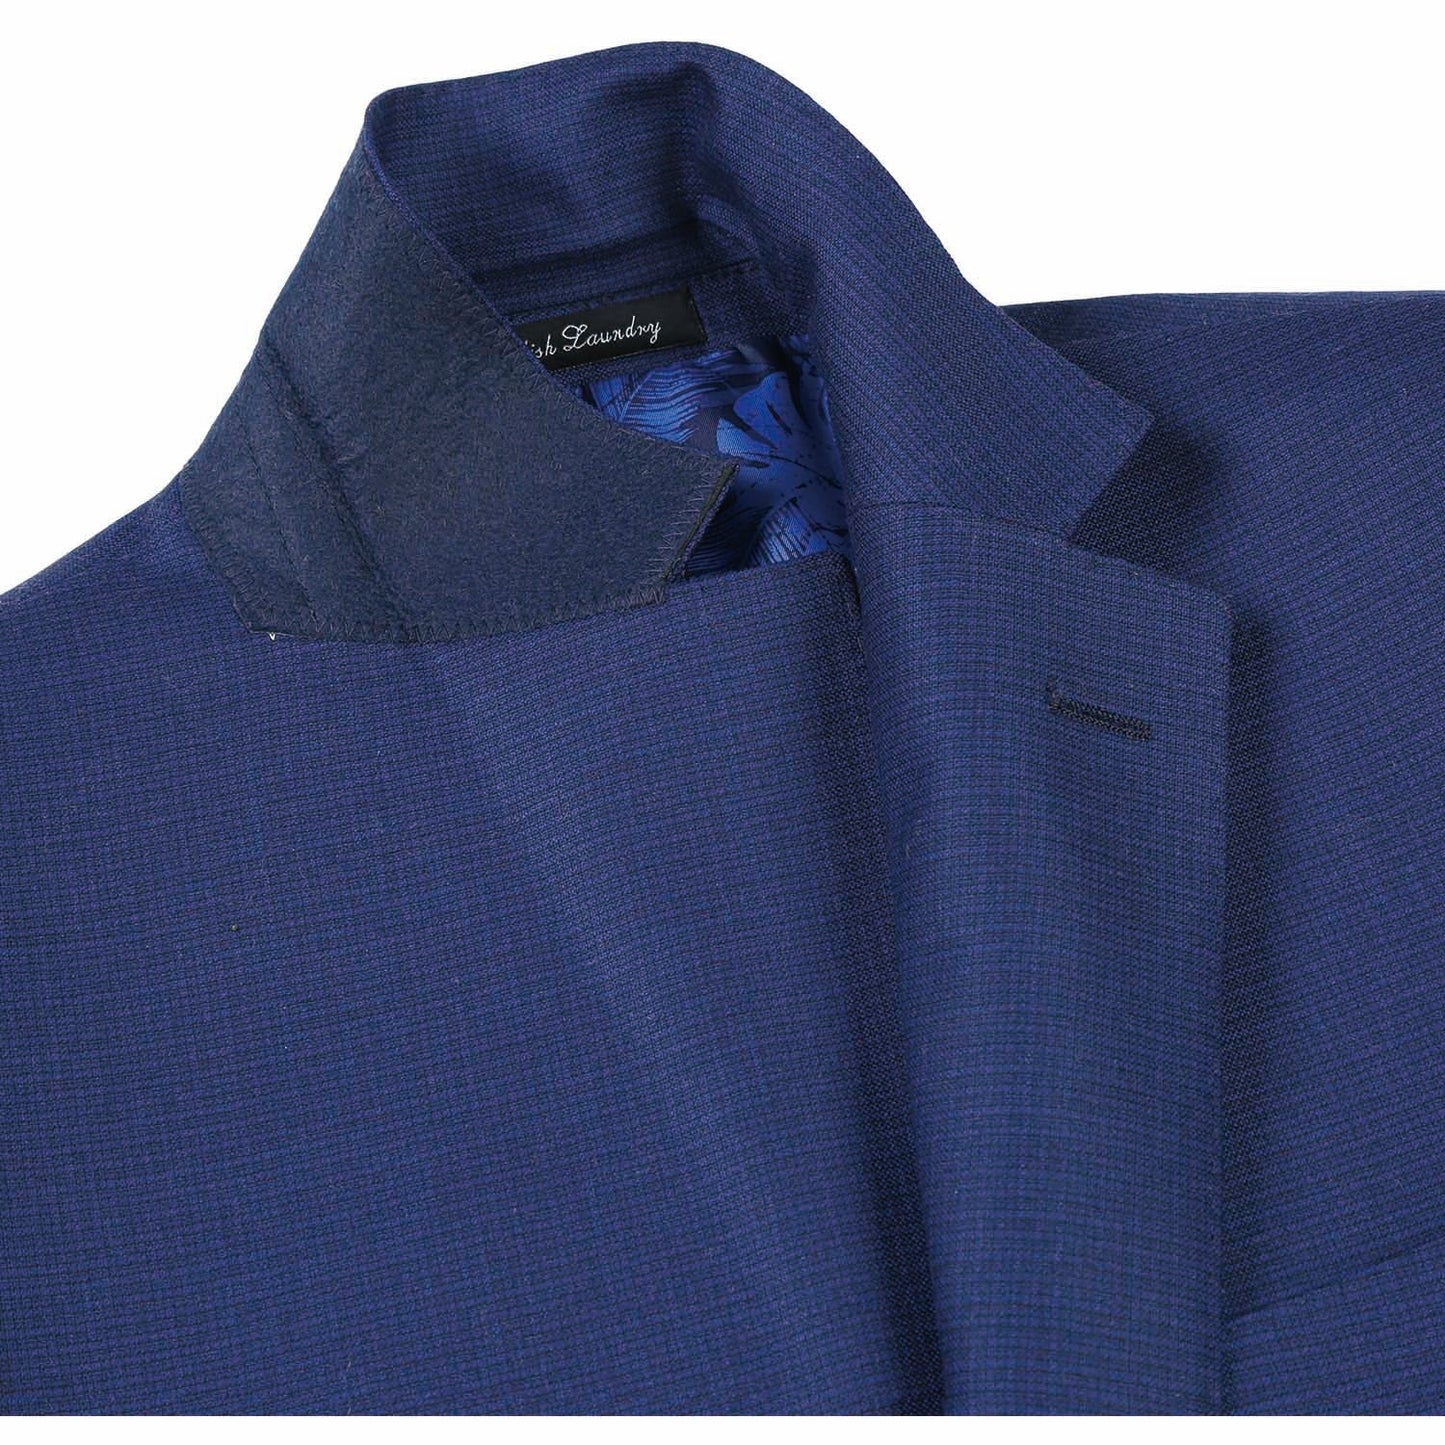 EL82-22-411 Slim Fit Blue Pattern Wool Suit